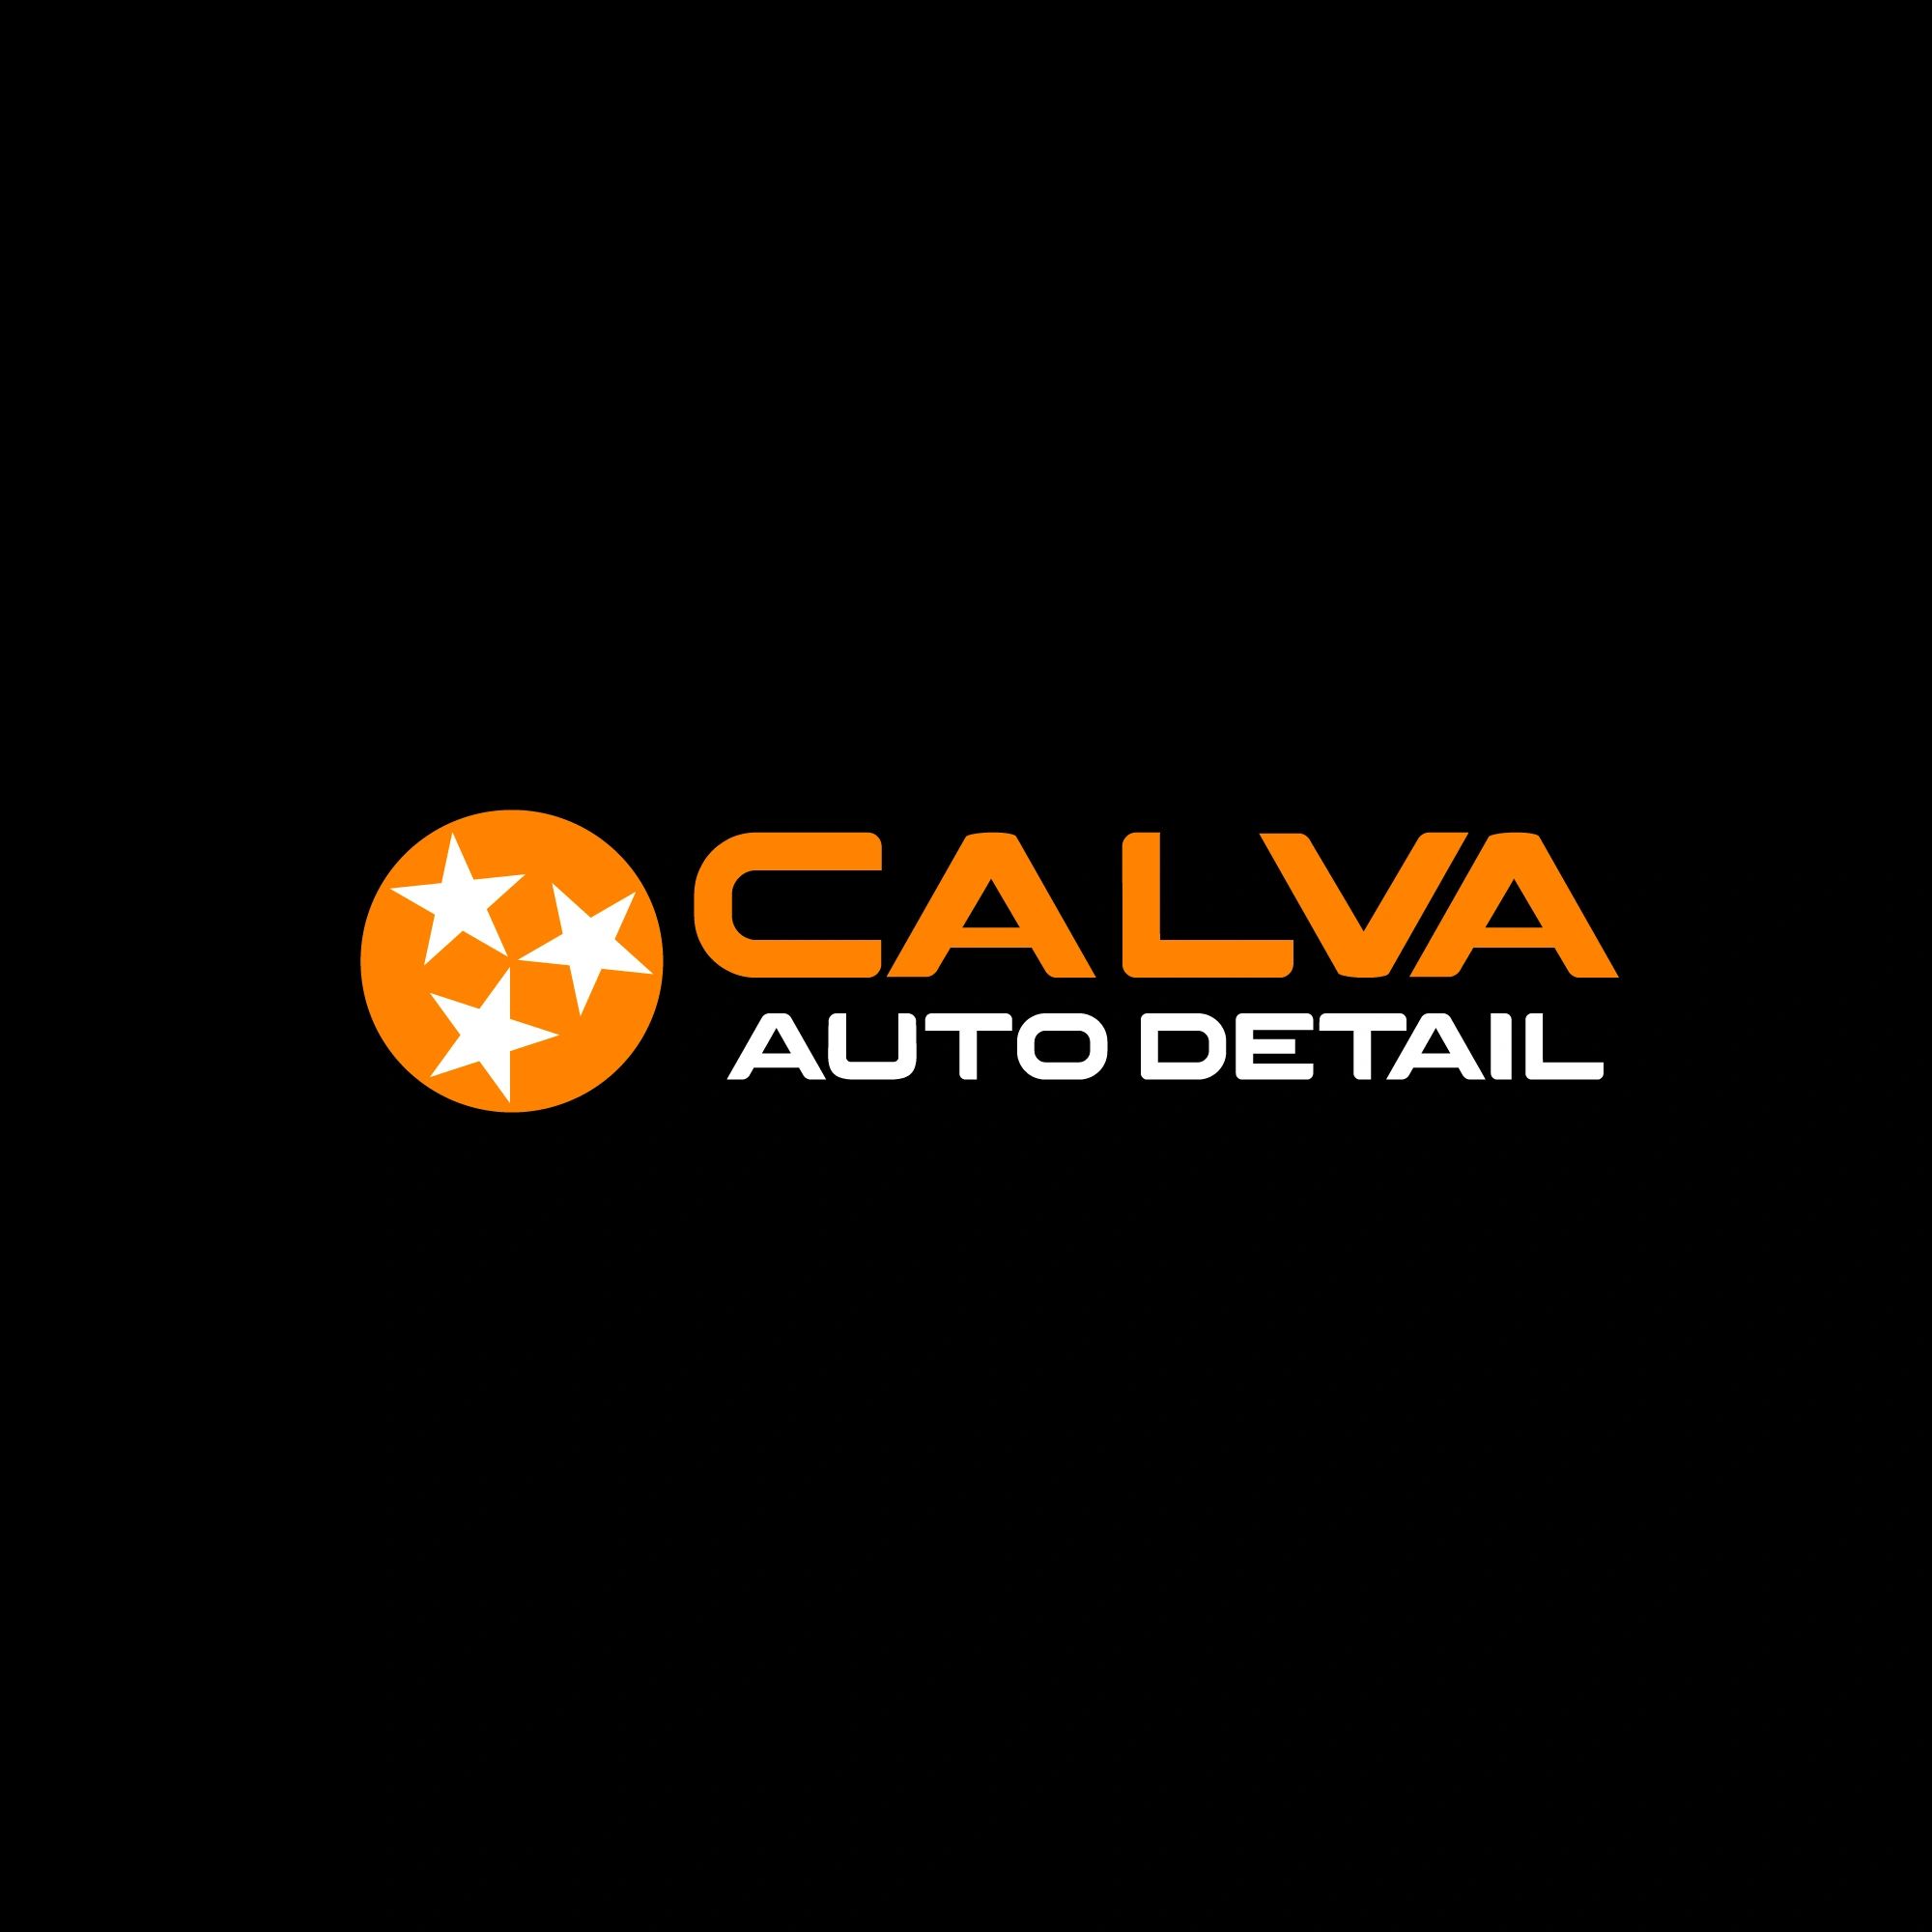 Mobile Auto Detail Logo